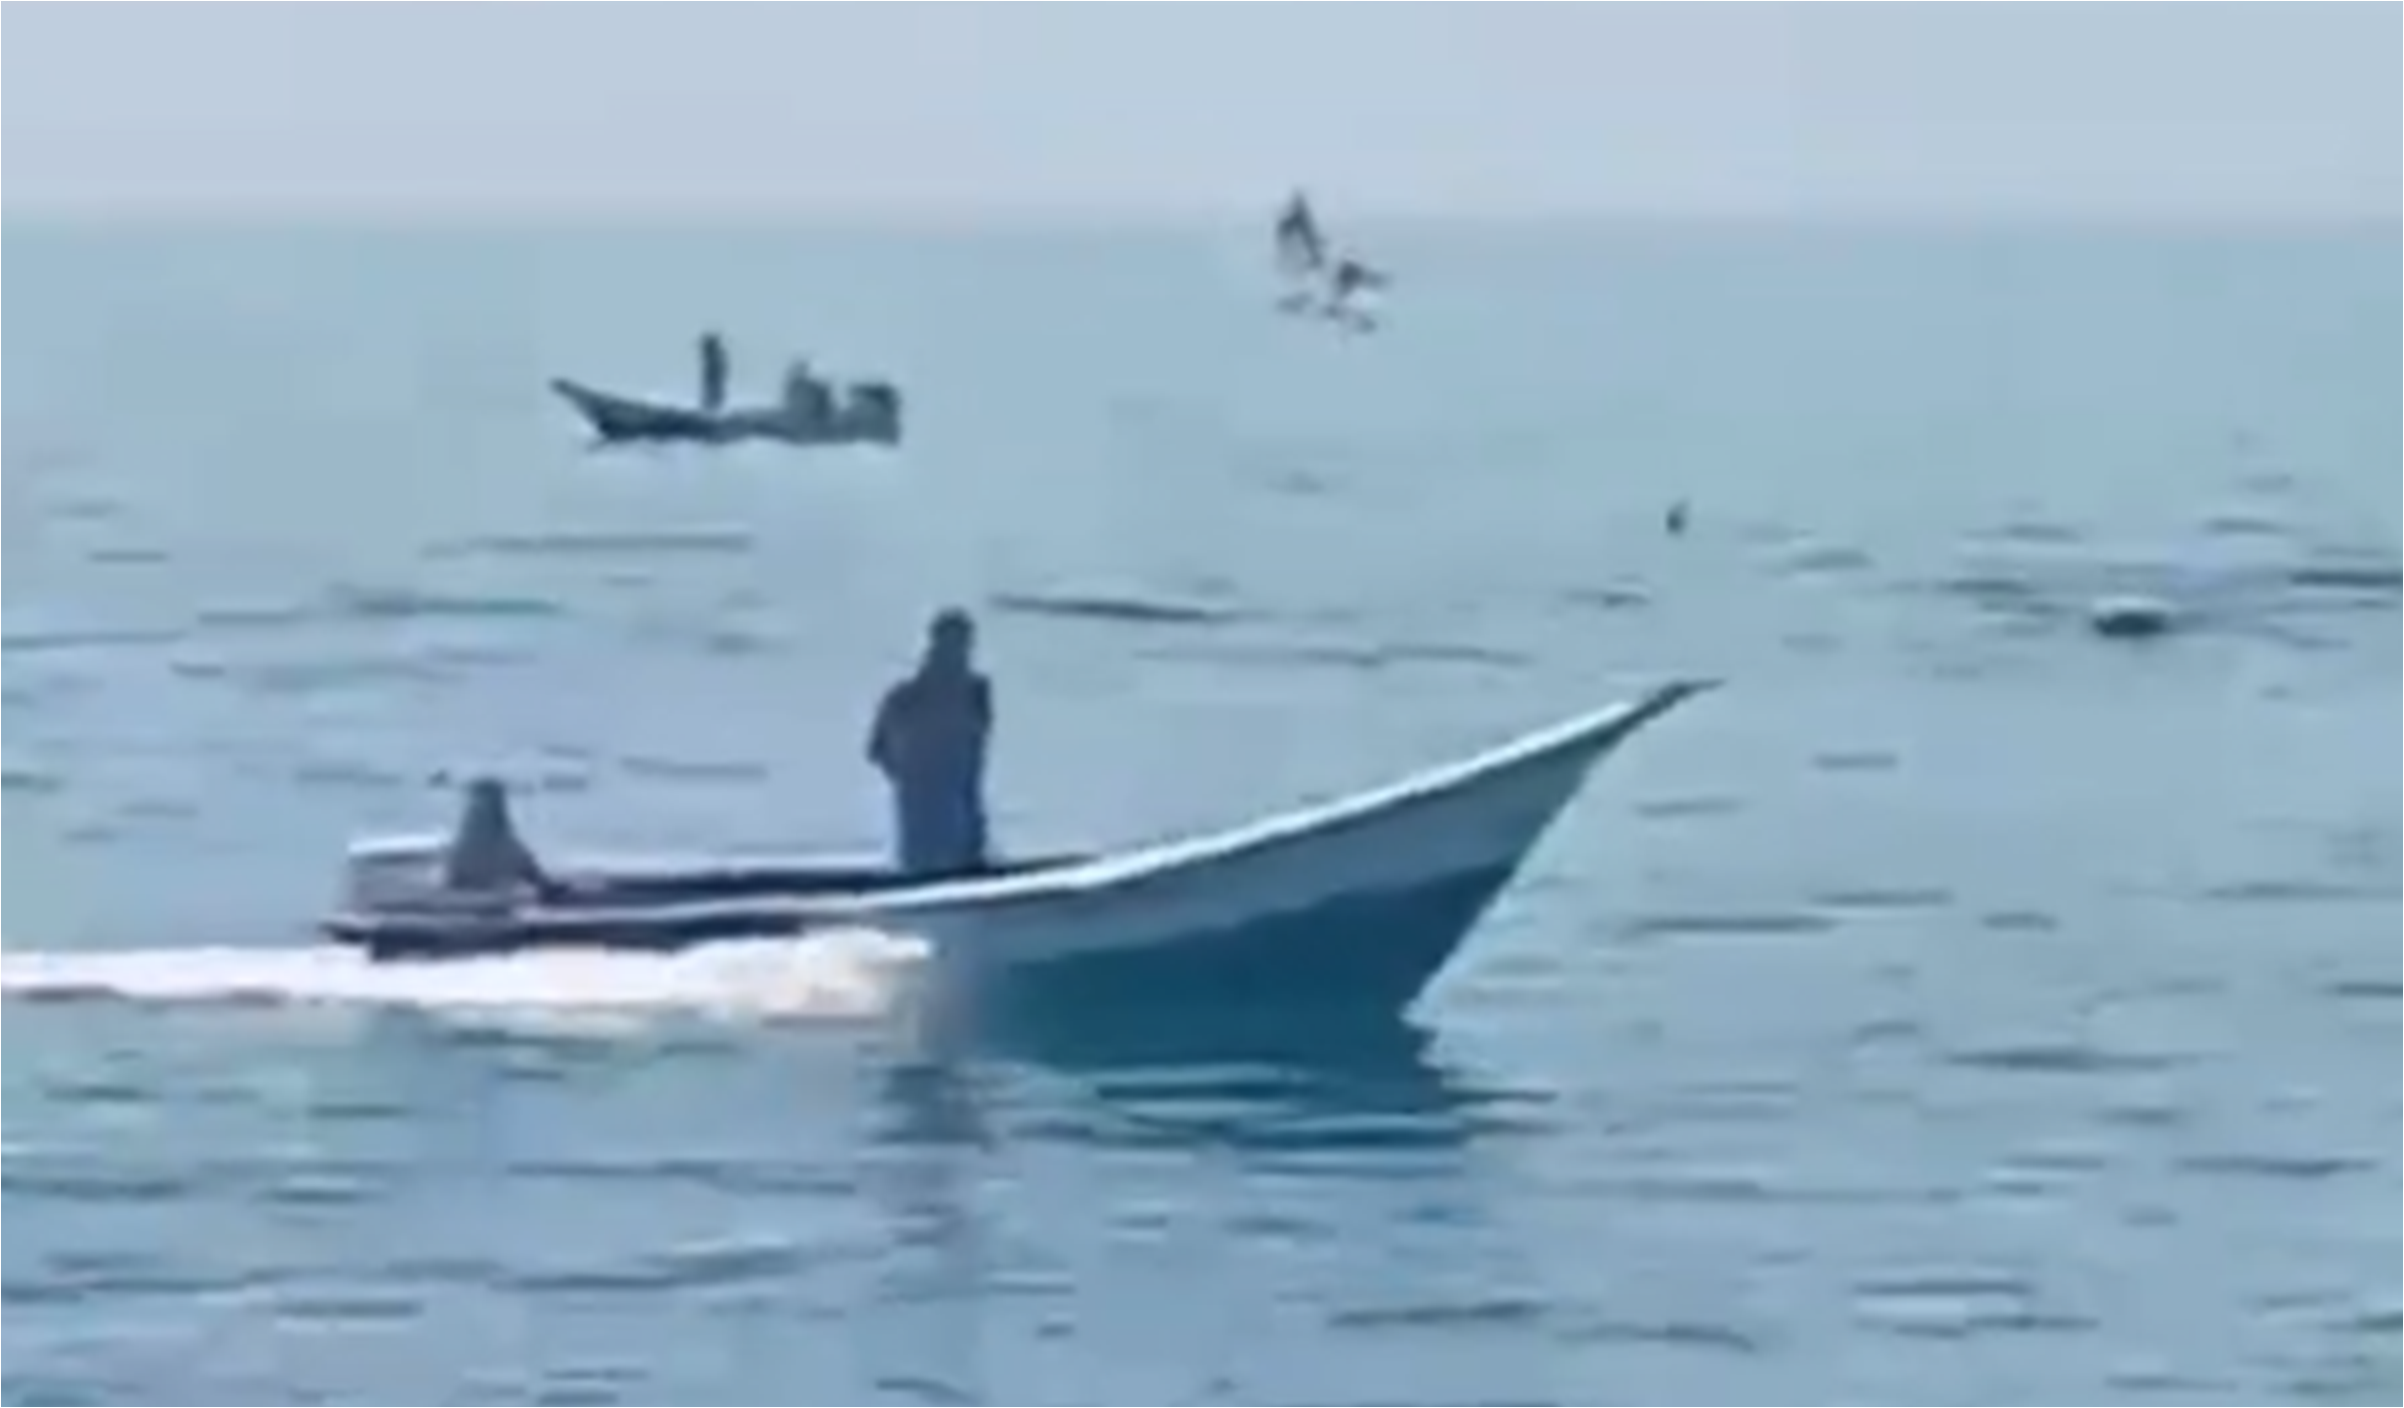 Pescadores de Pampatar avistan manada de delfines +Video